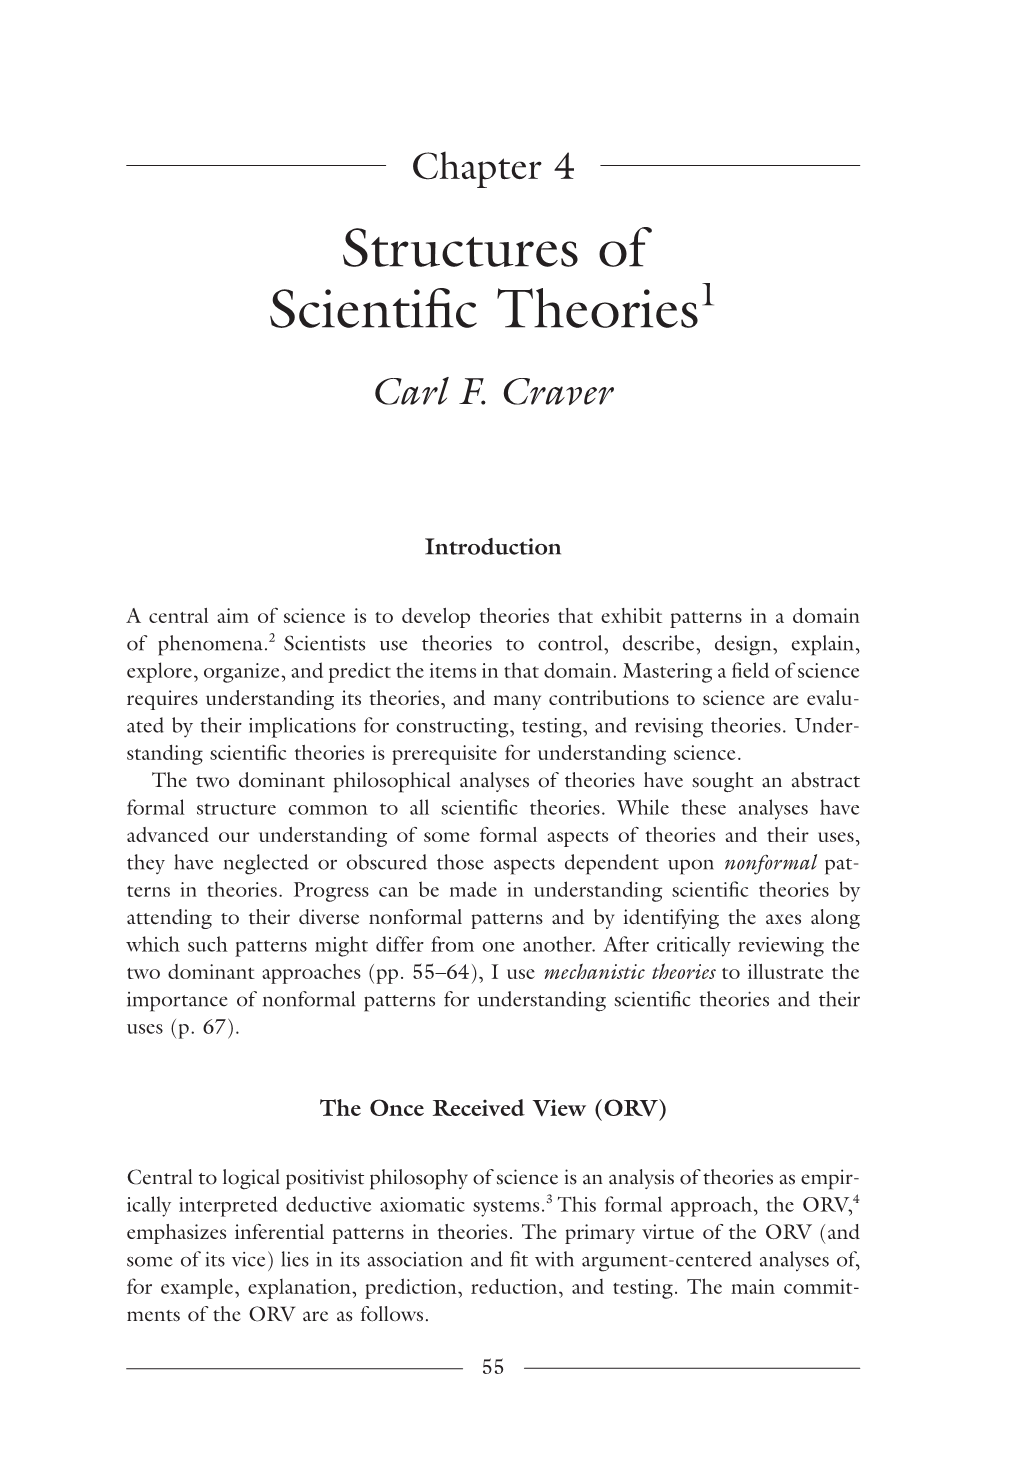 Structures of Scientific Theories